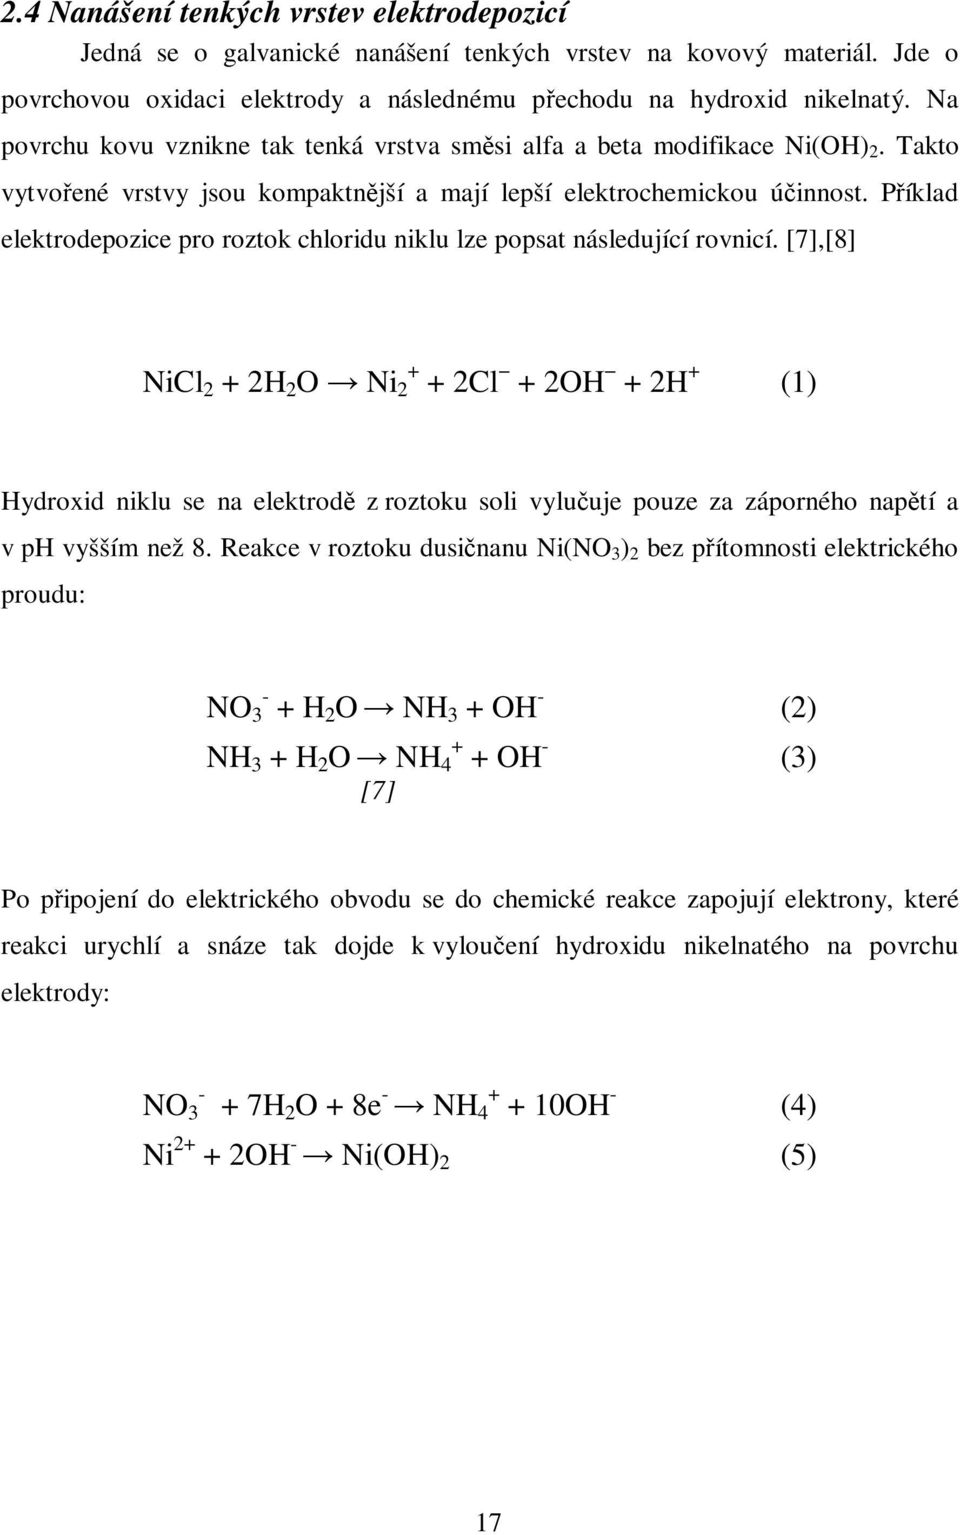 Píklad elektrodepozice pro roztok chloridu niklu lze popsat následující rovnicí.